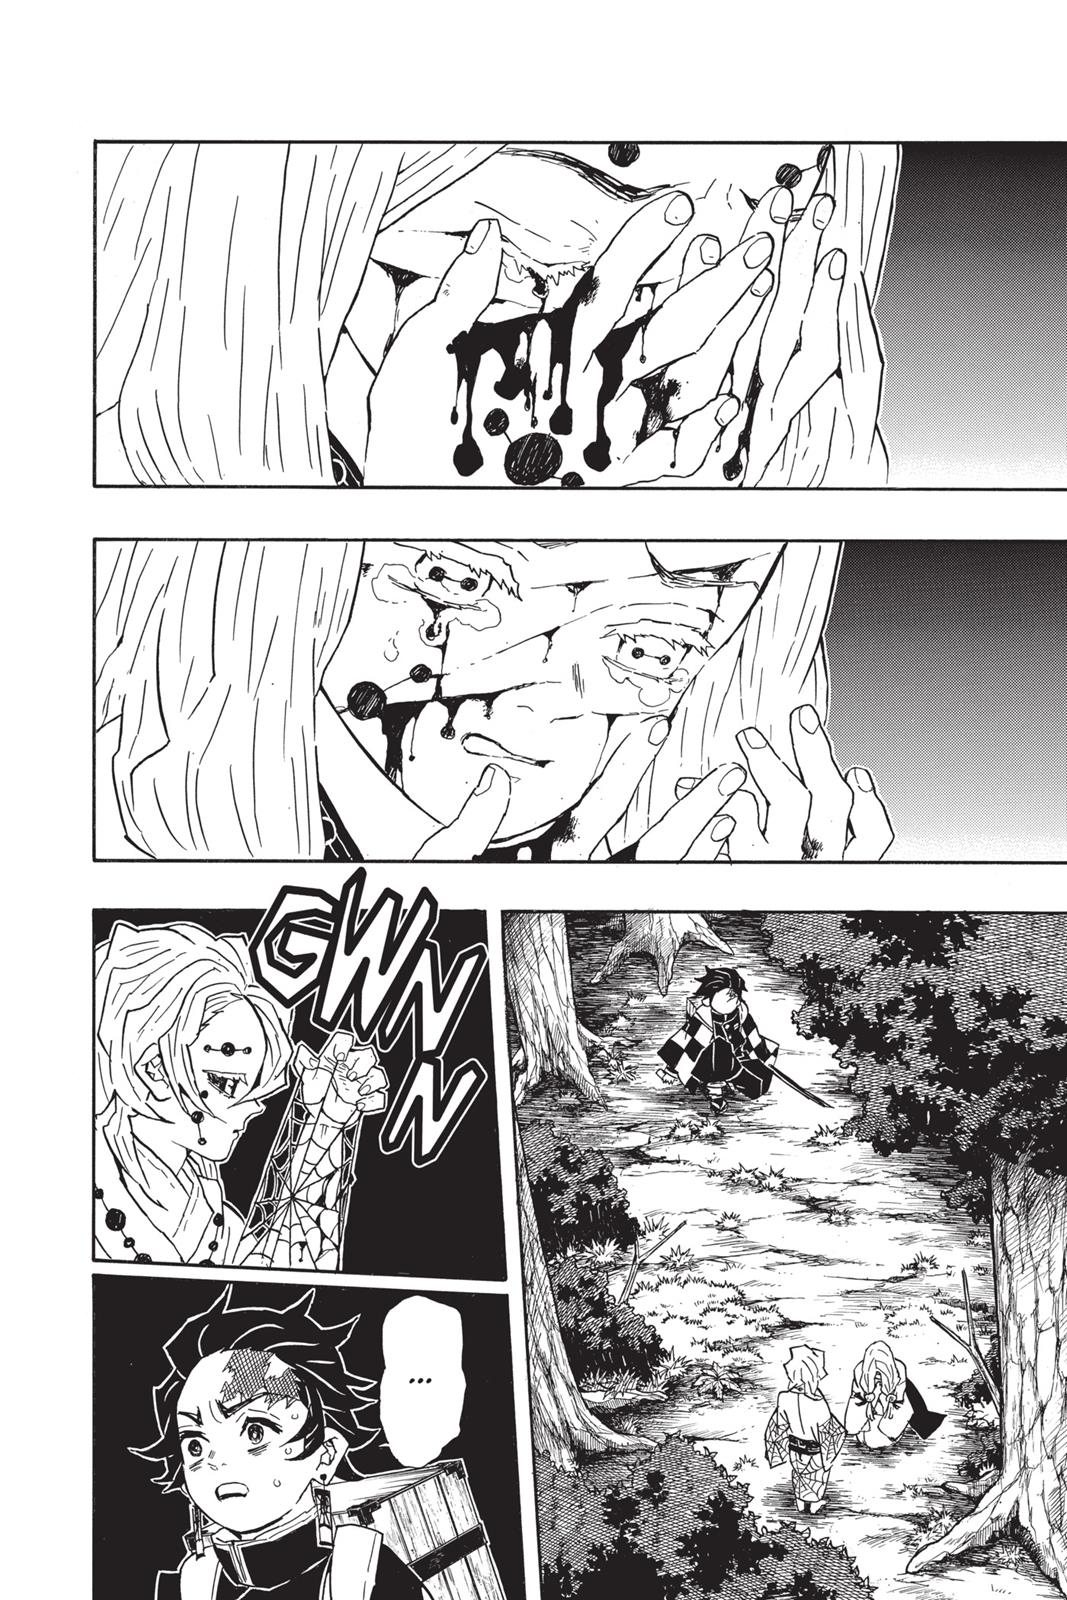 Demon Slayer Manga Manga Chapter - 36 - image 1